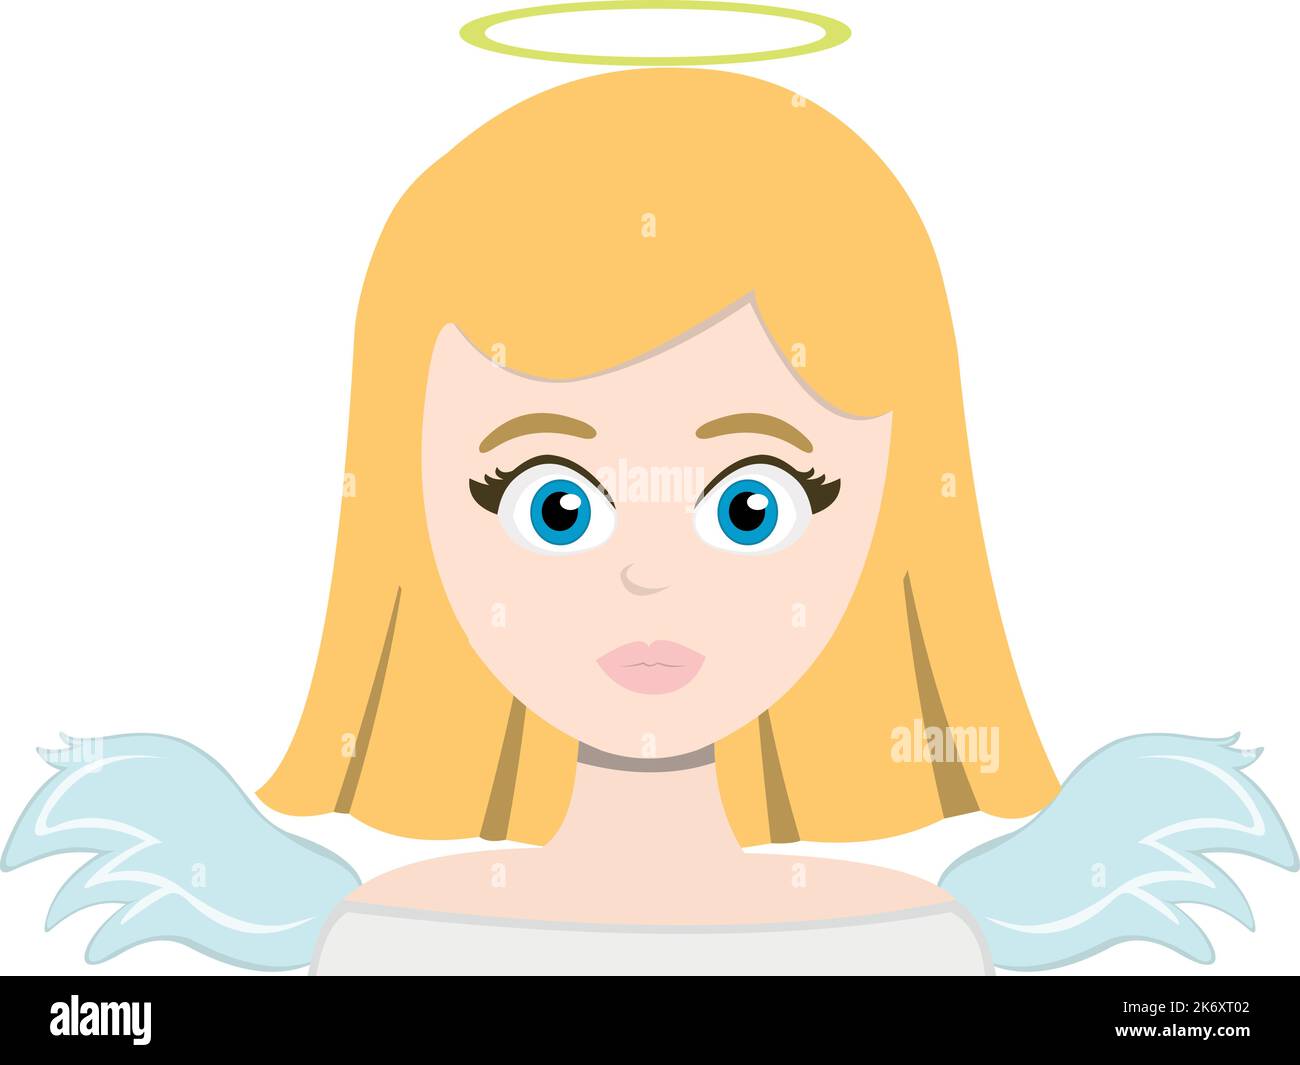 Illustration vectorielle d'un ange féminin, avec des cheveux blonds, des yeux bleus, des ailes et un halo sur sa tête Illustration de Vecteur